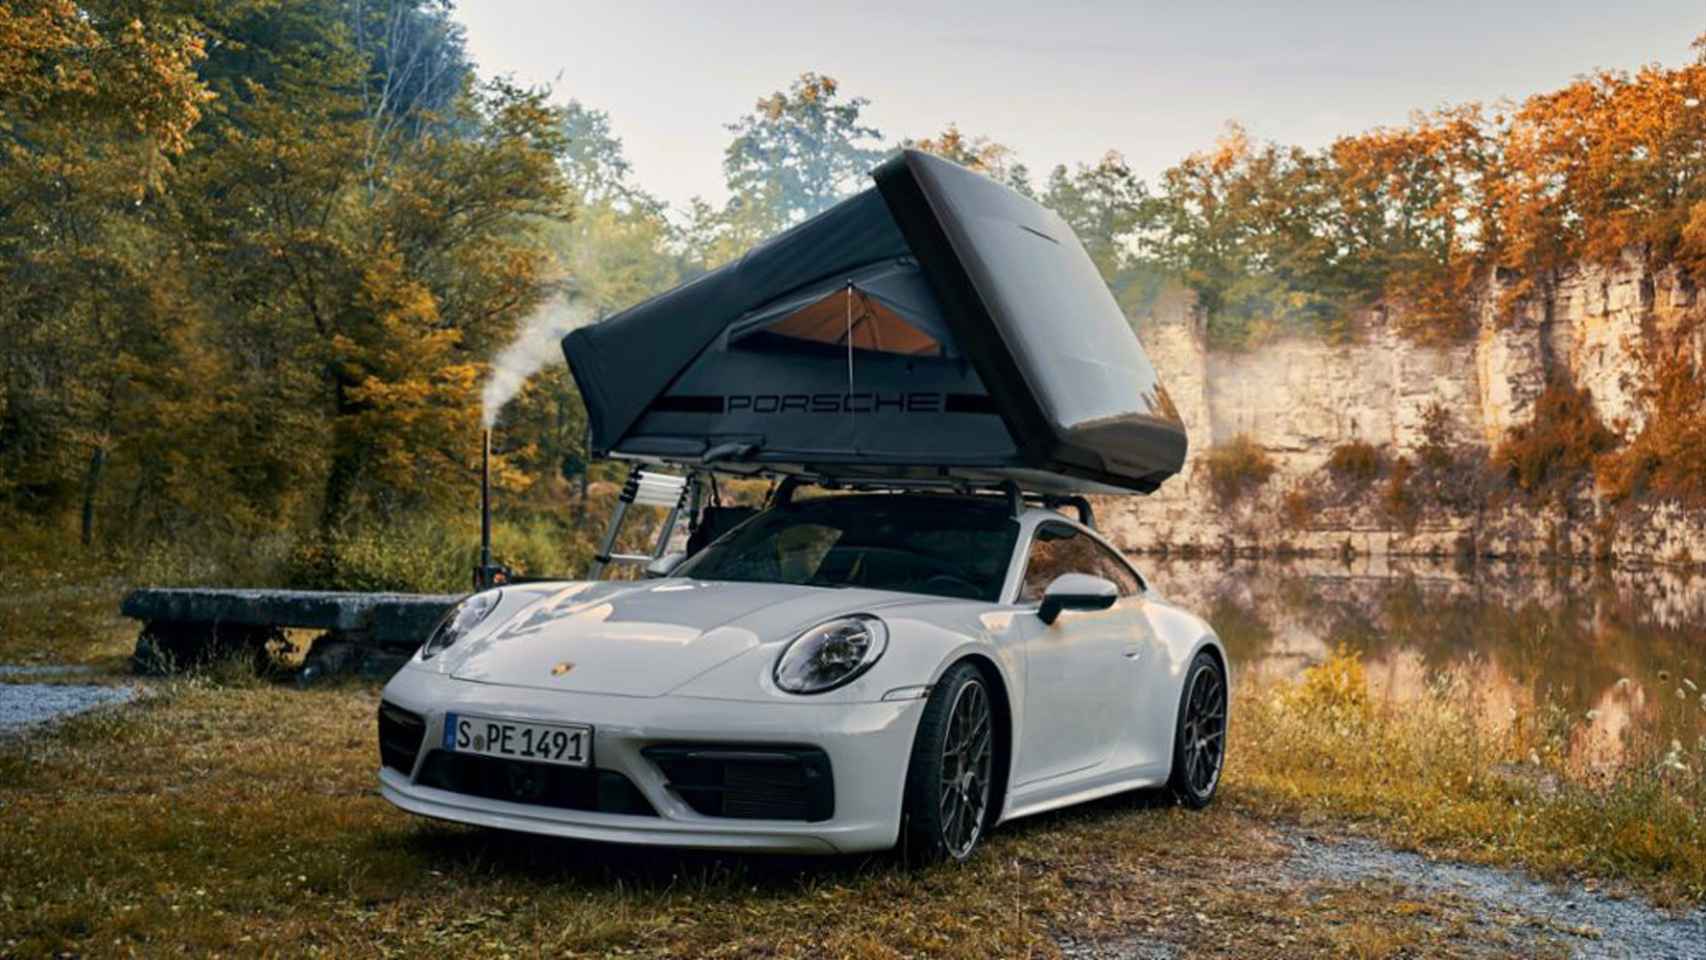 Porsche con una tienda de campaña desplegada.